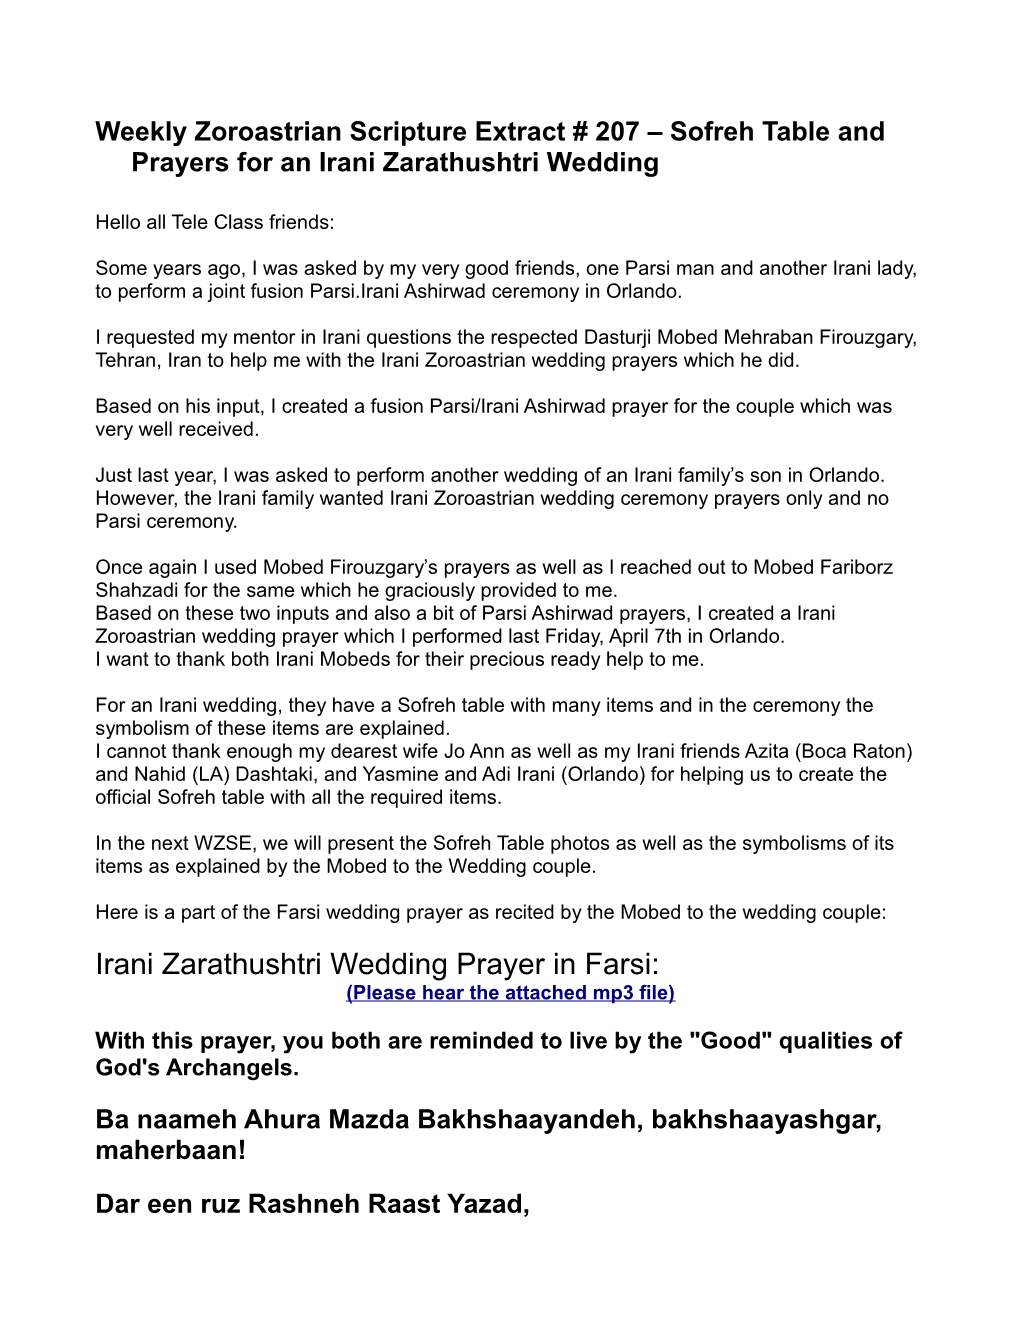 Irani Zarathushtri Wedding Prayer in Farsi: (Please Hear the Attached Mp3 File)